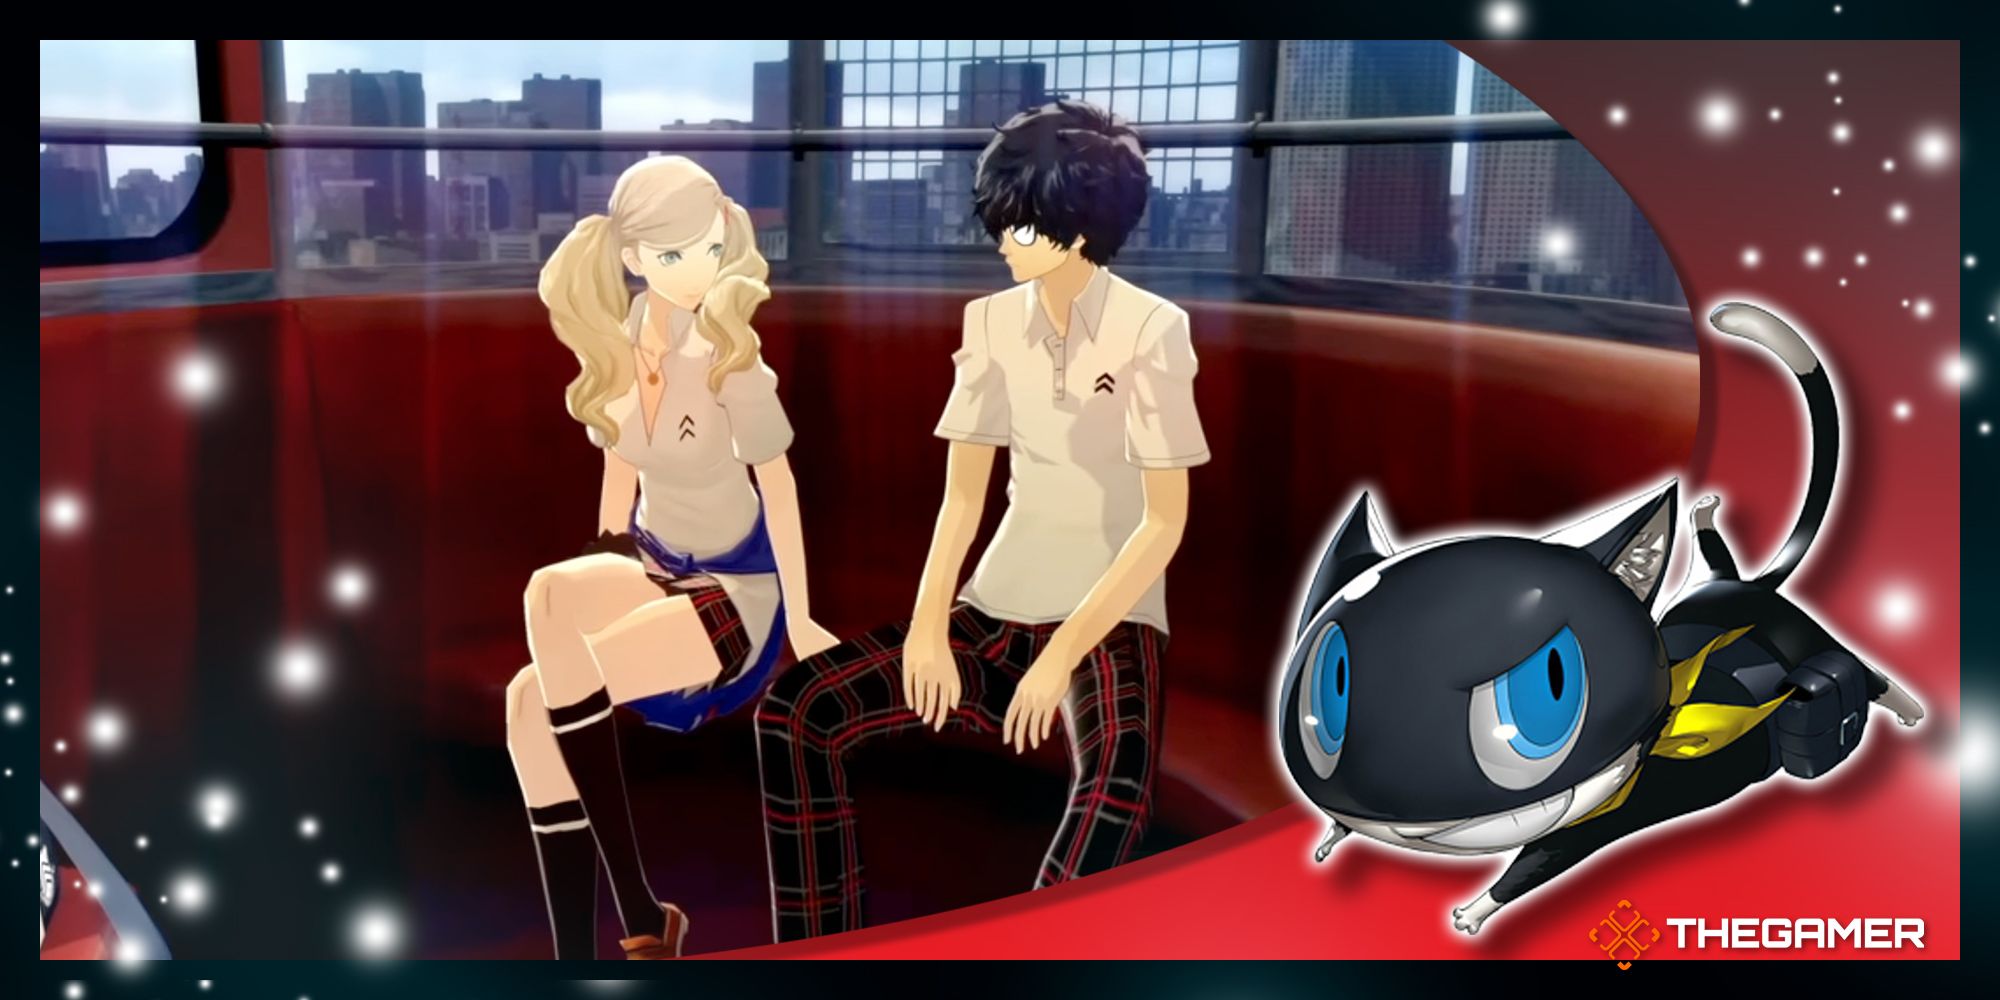 Screenshot and art from Persona 5 Royal.